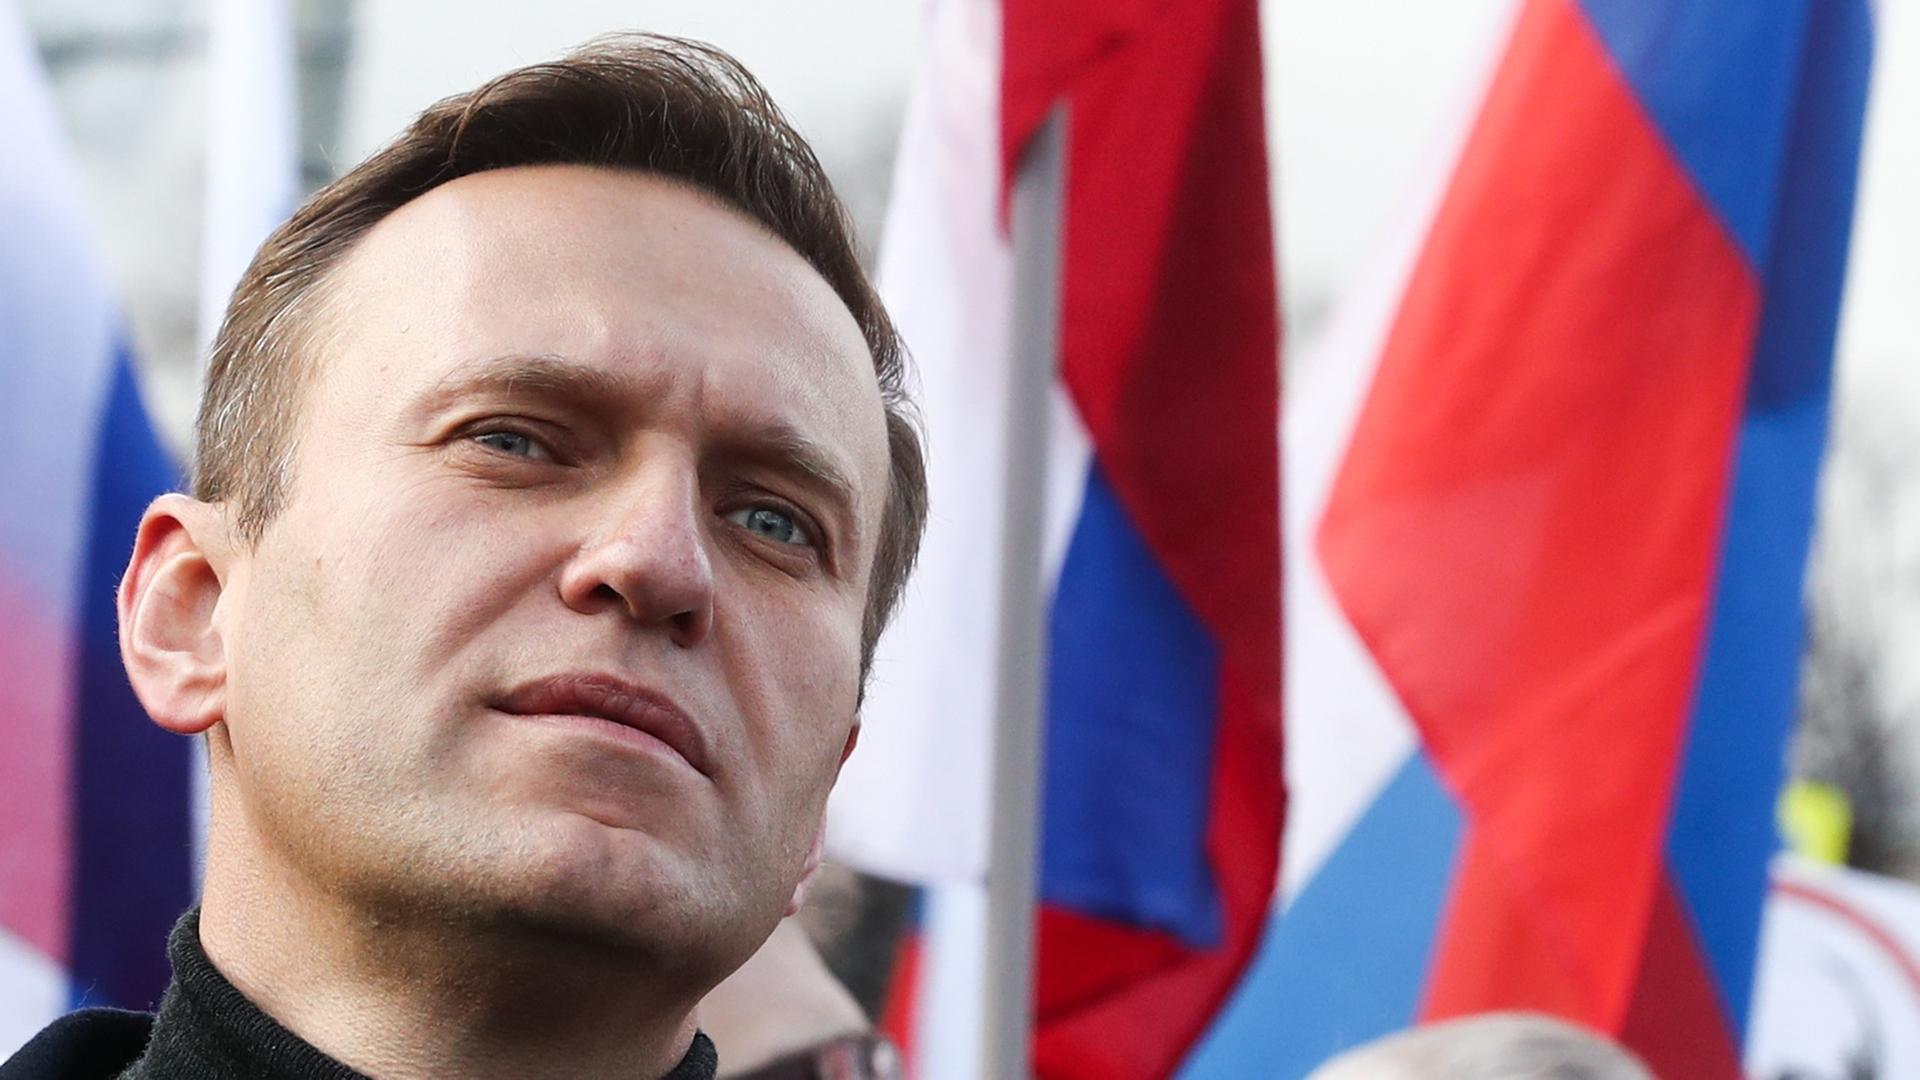 Alexej Nawalny vor russischen Flaggen bei einem Gedenkmarsch in Moskau am 29.02.2020.